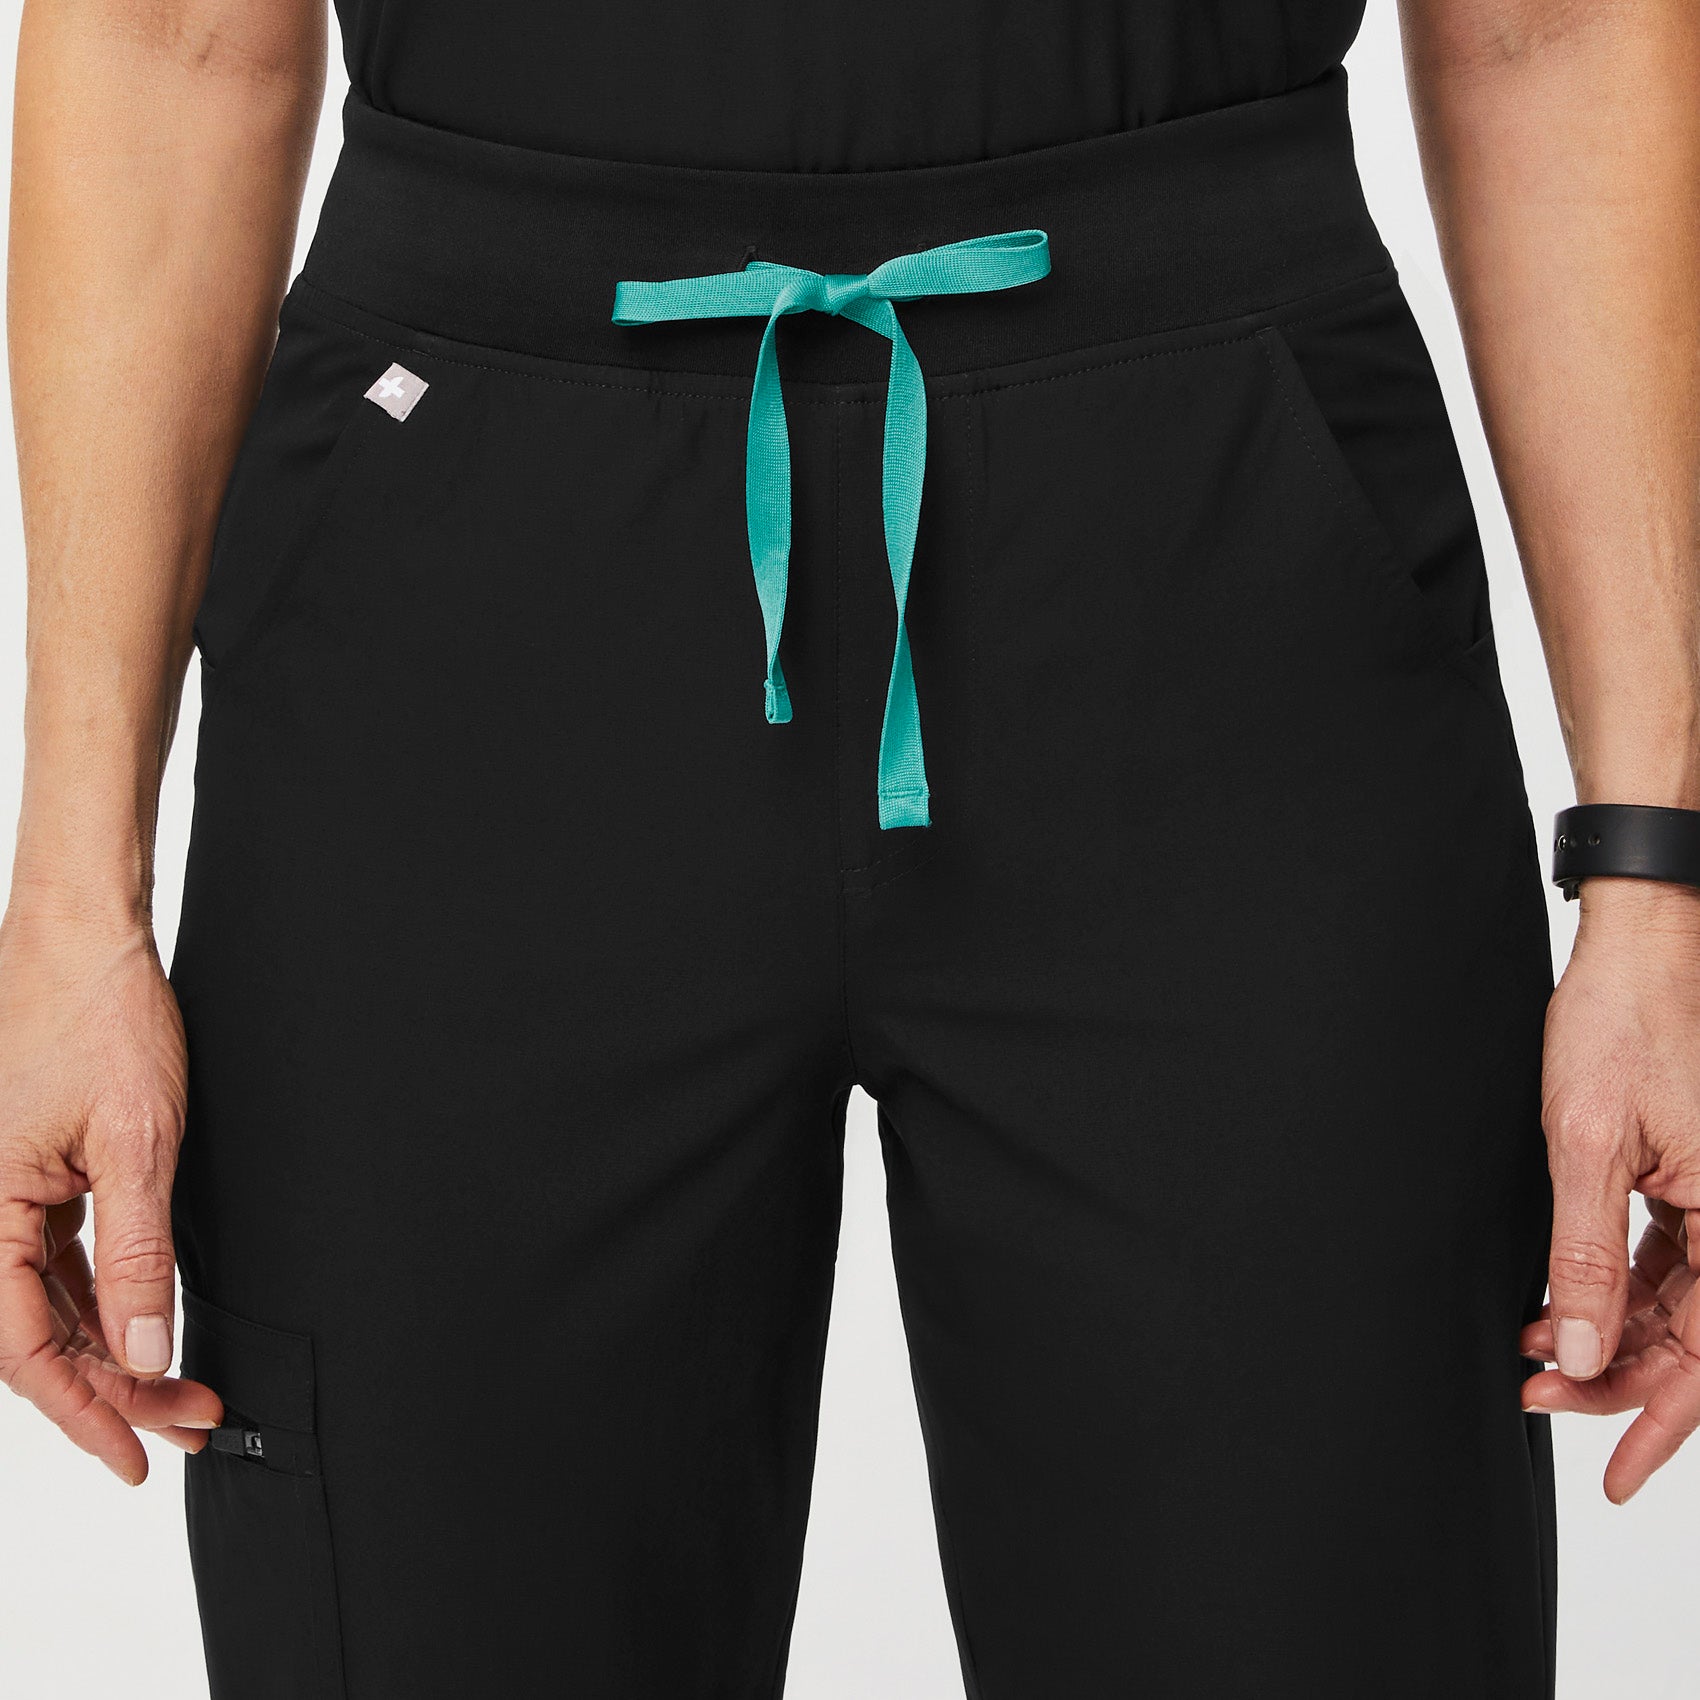 FIGS Zamora Jogger Style Scrub Pants for Women - Graphite 1.0, XXS